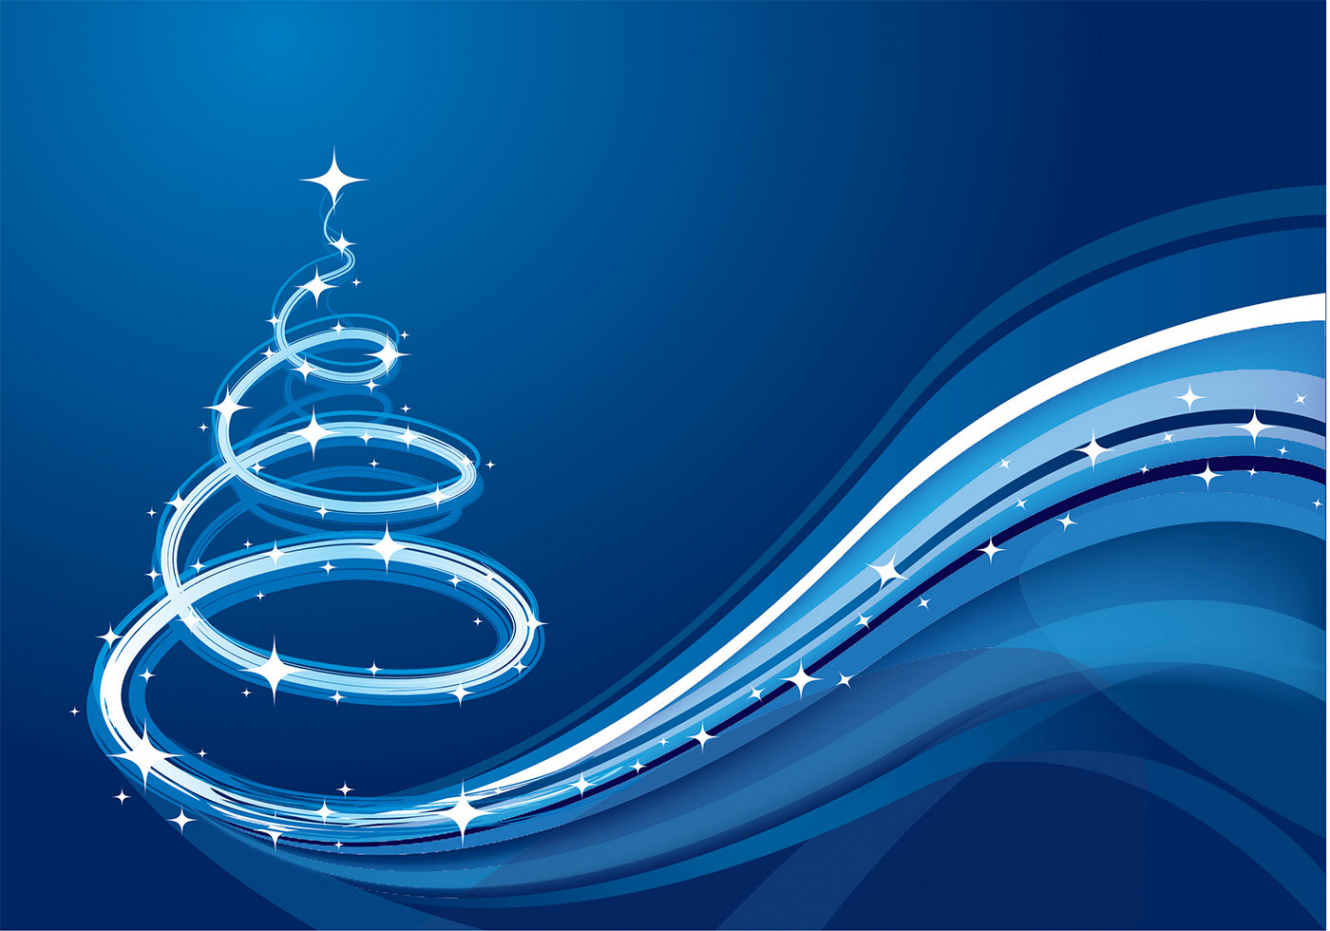 Blue Wave Christmas Tree Background - Free Photoshop Brushes at